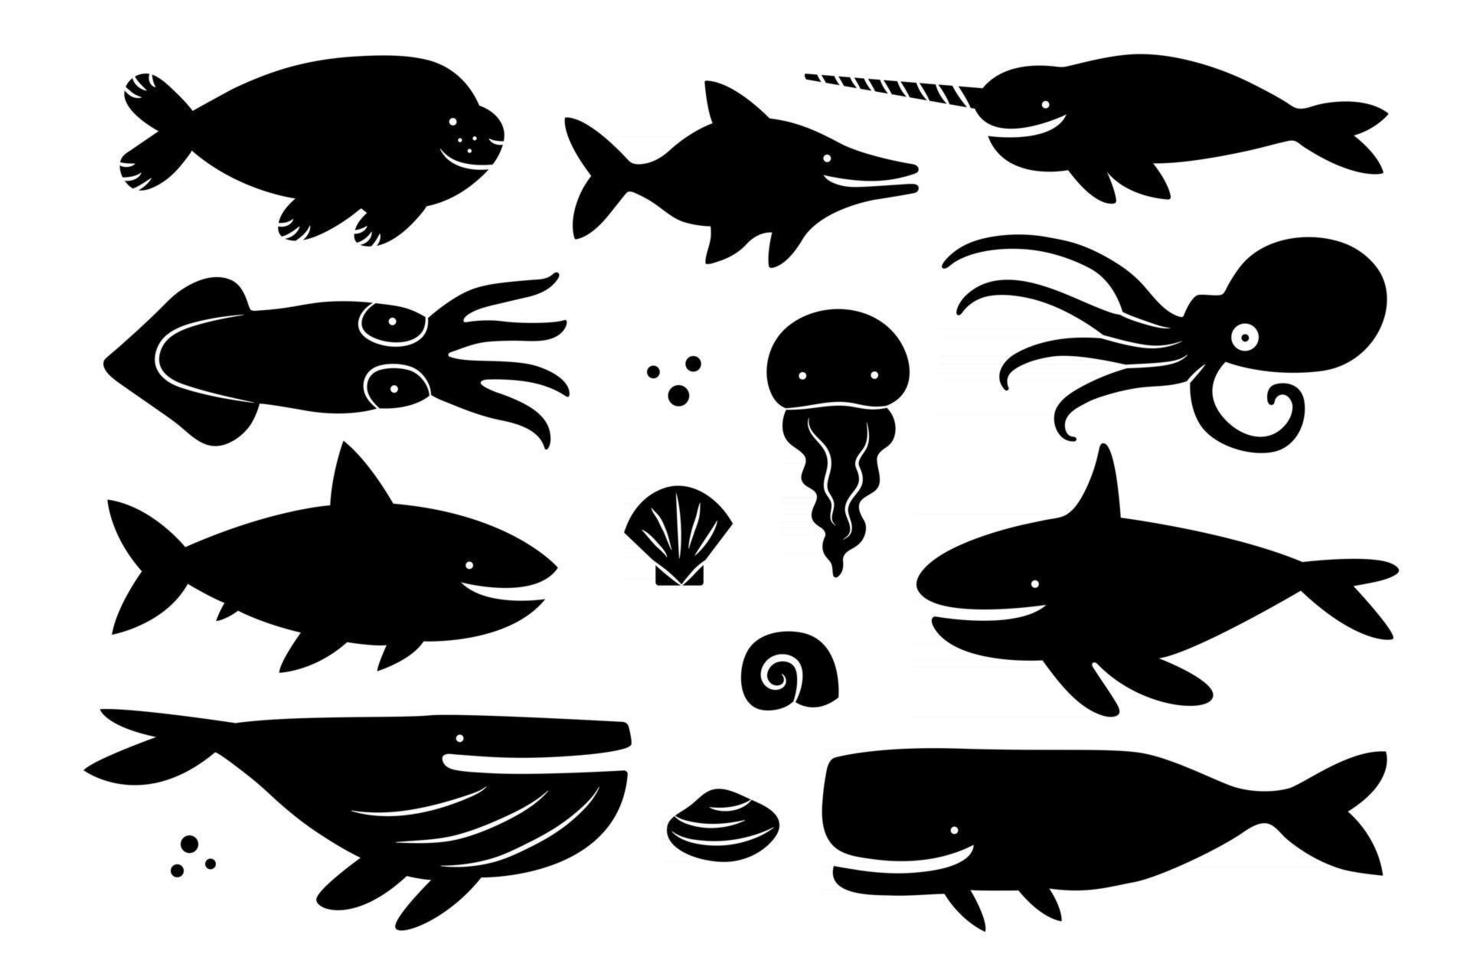 creature del mare, animali, pesci. insieme della siluetta nera. disegno del modello del tagliere. vettore